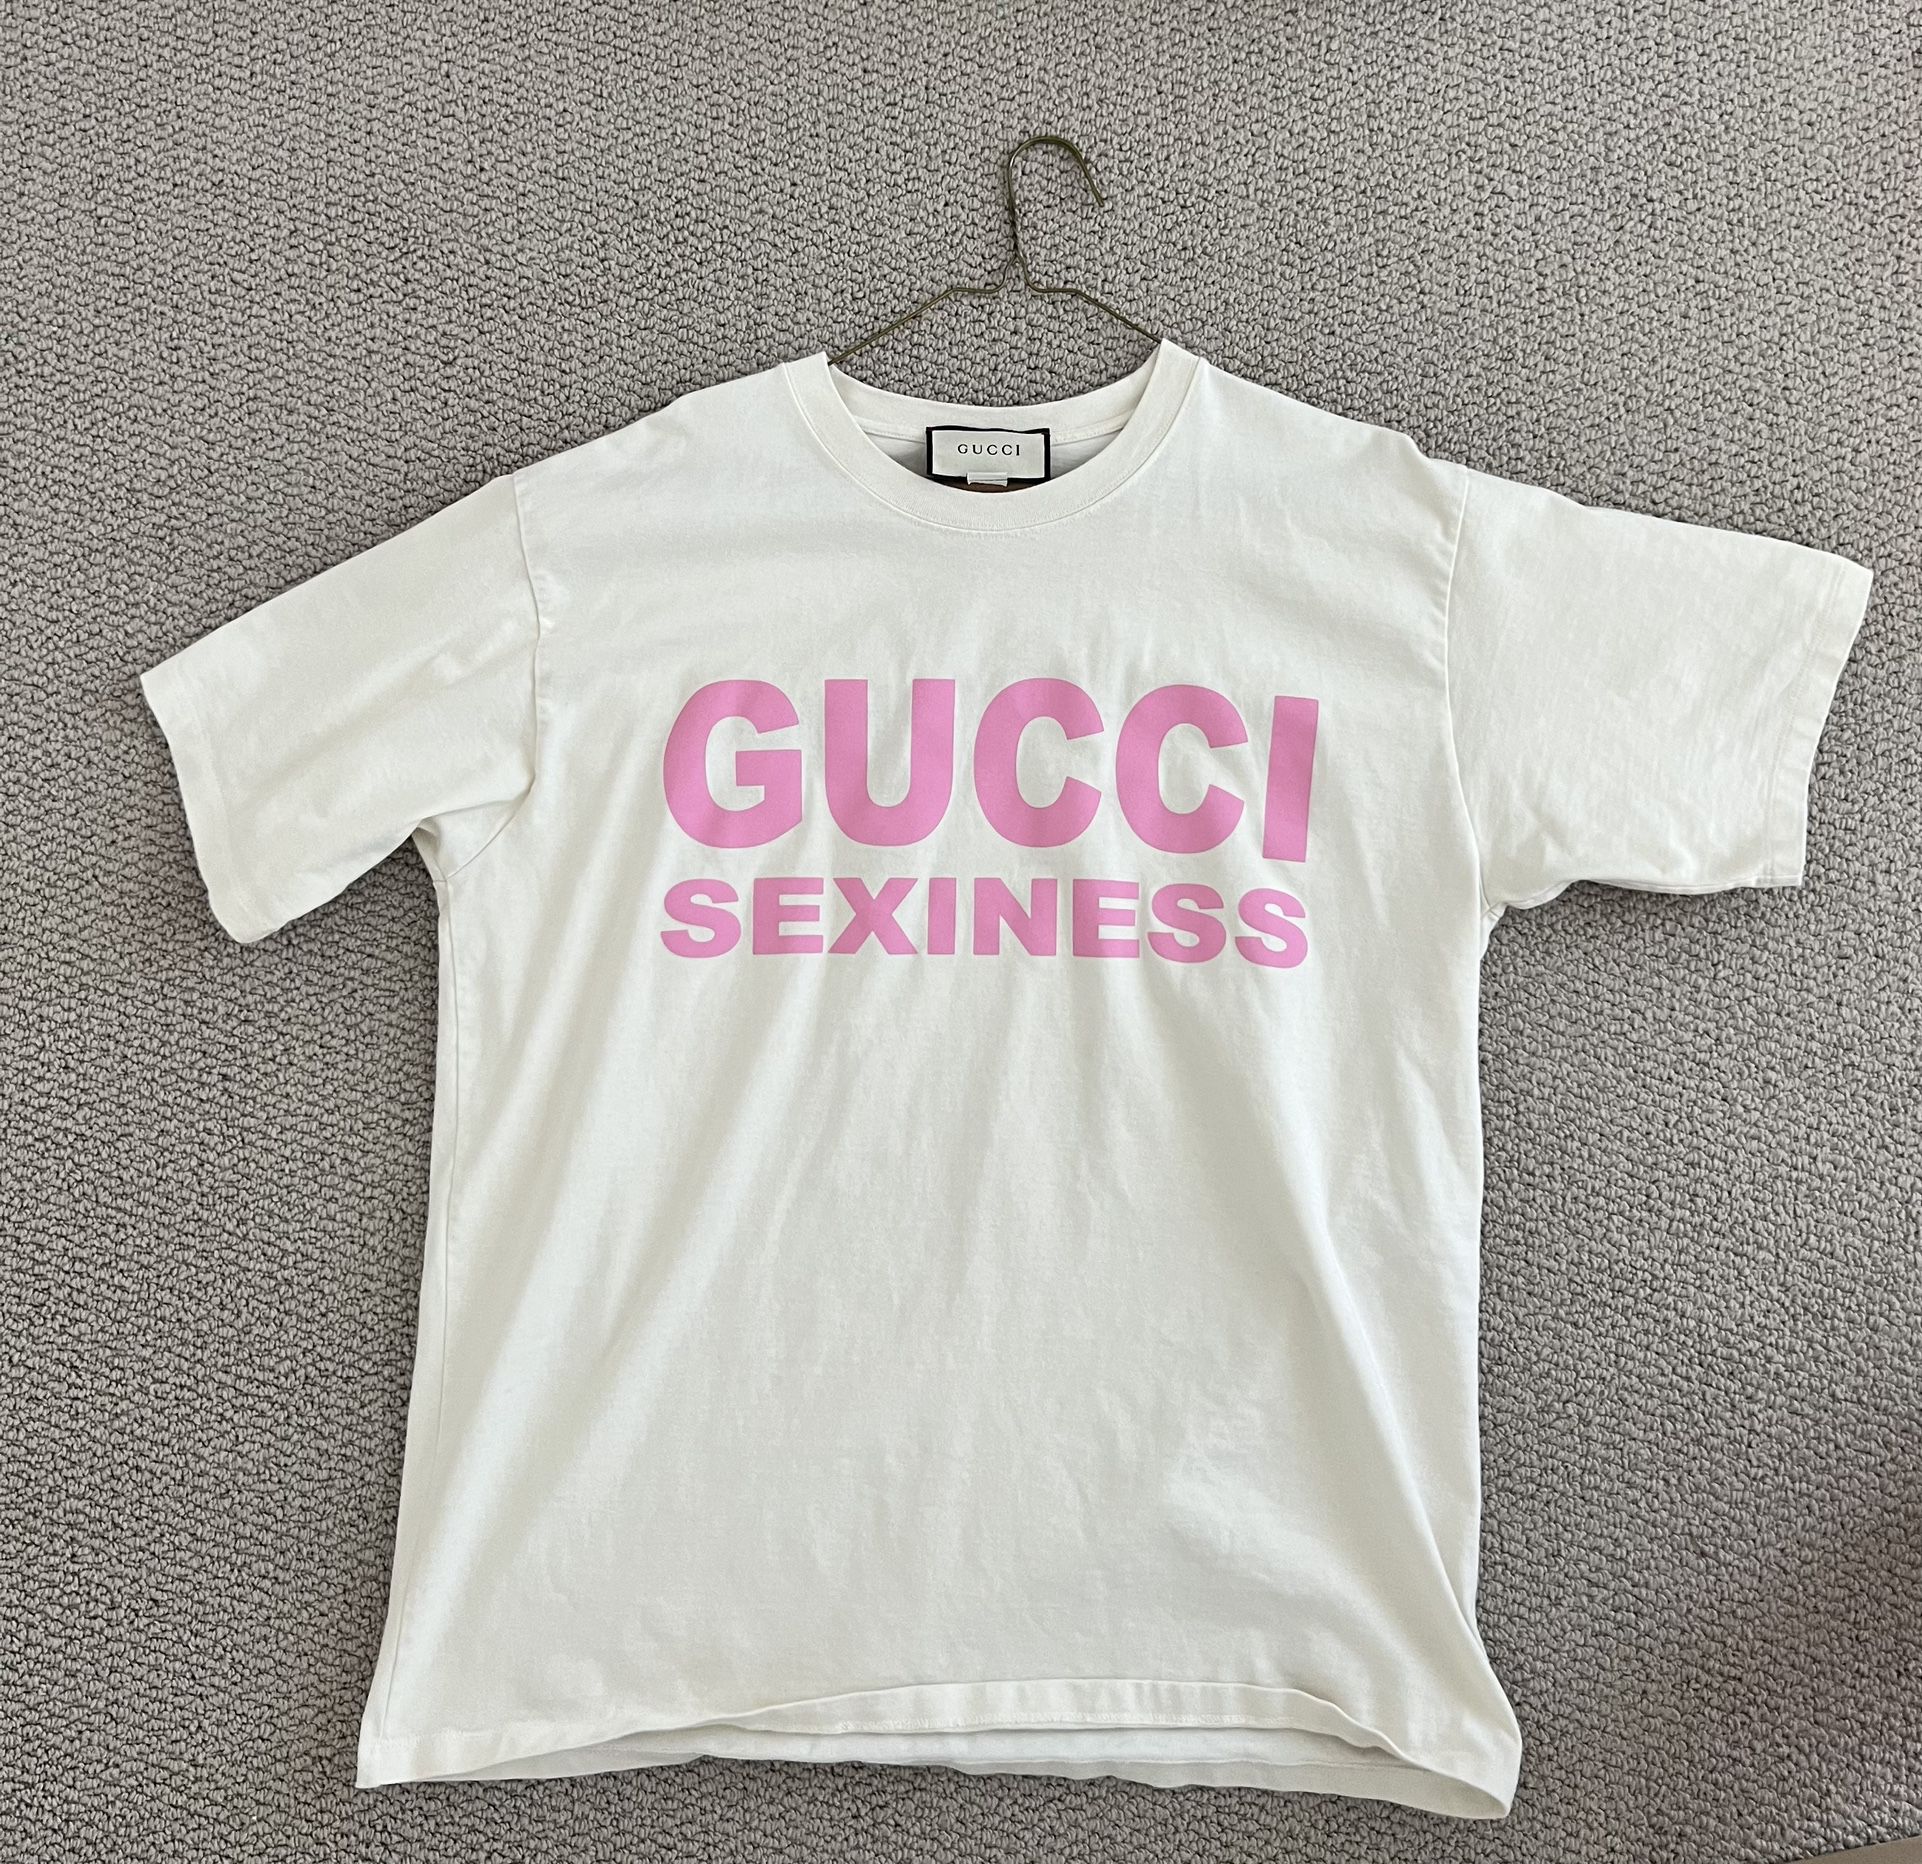 GUCCI Sexiness Oversize T-shirt Size Medium